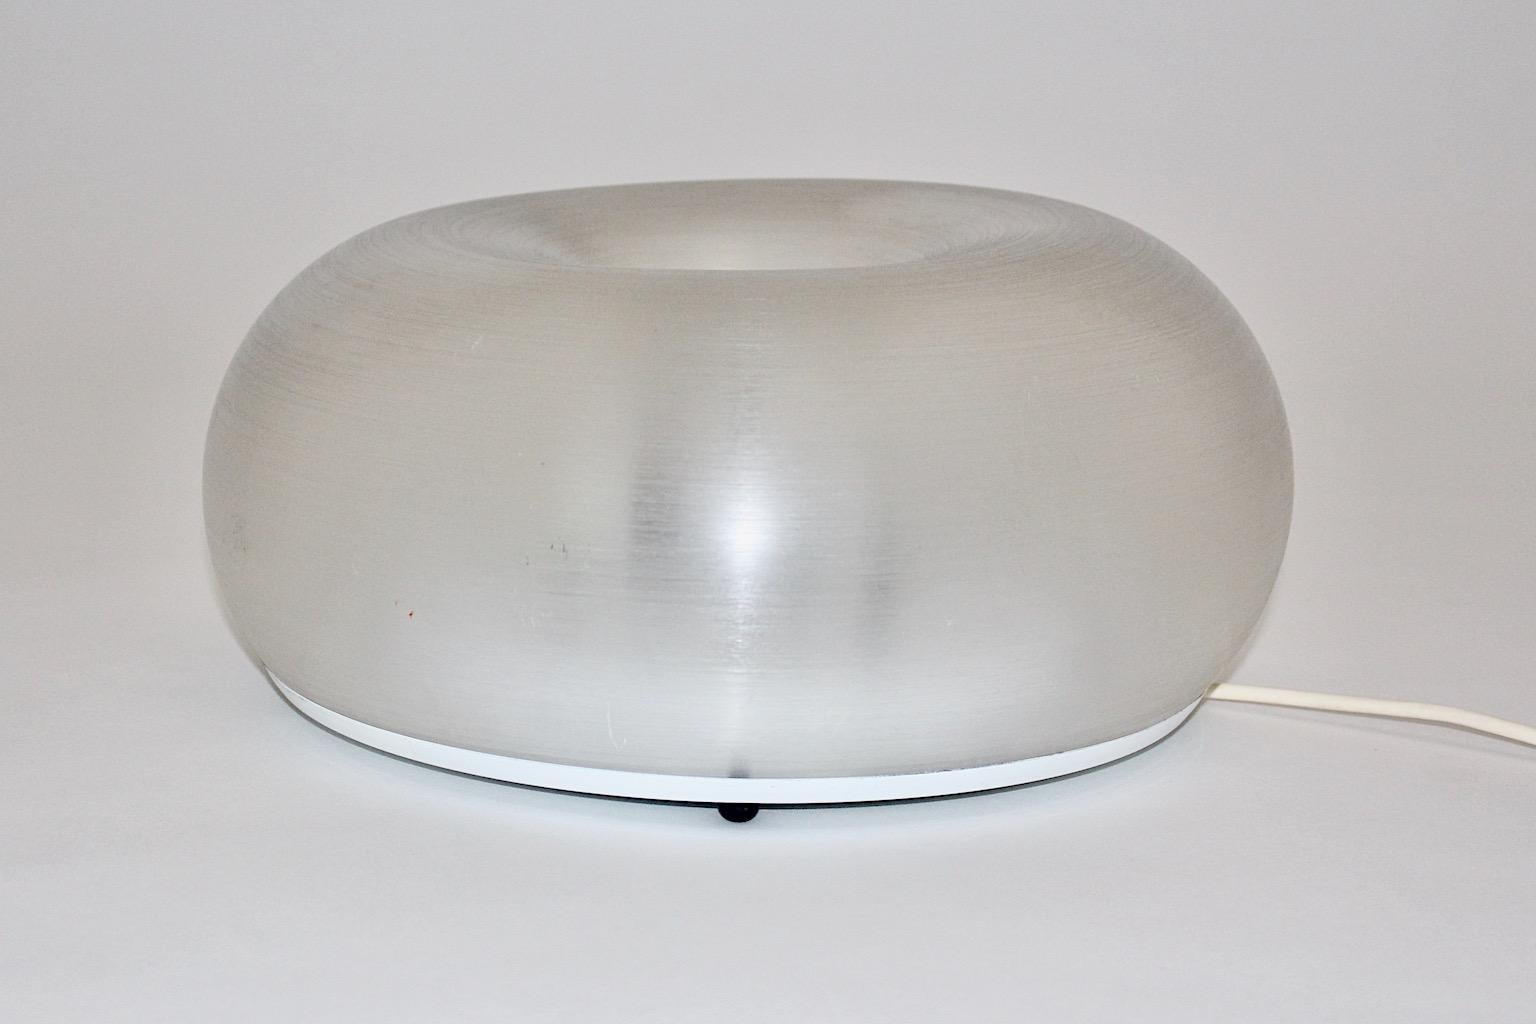 Une lampe de table ou une applique moderne et vintage en plexiglas Lucite, qui a été conçue en Italie, dans les années 1980.
La lampe de table ou l'applique présente un abat-jour en plexiglas de forme ronde avec des détails en métal chromé, un